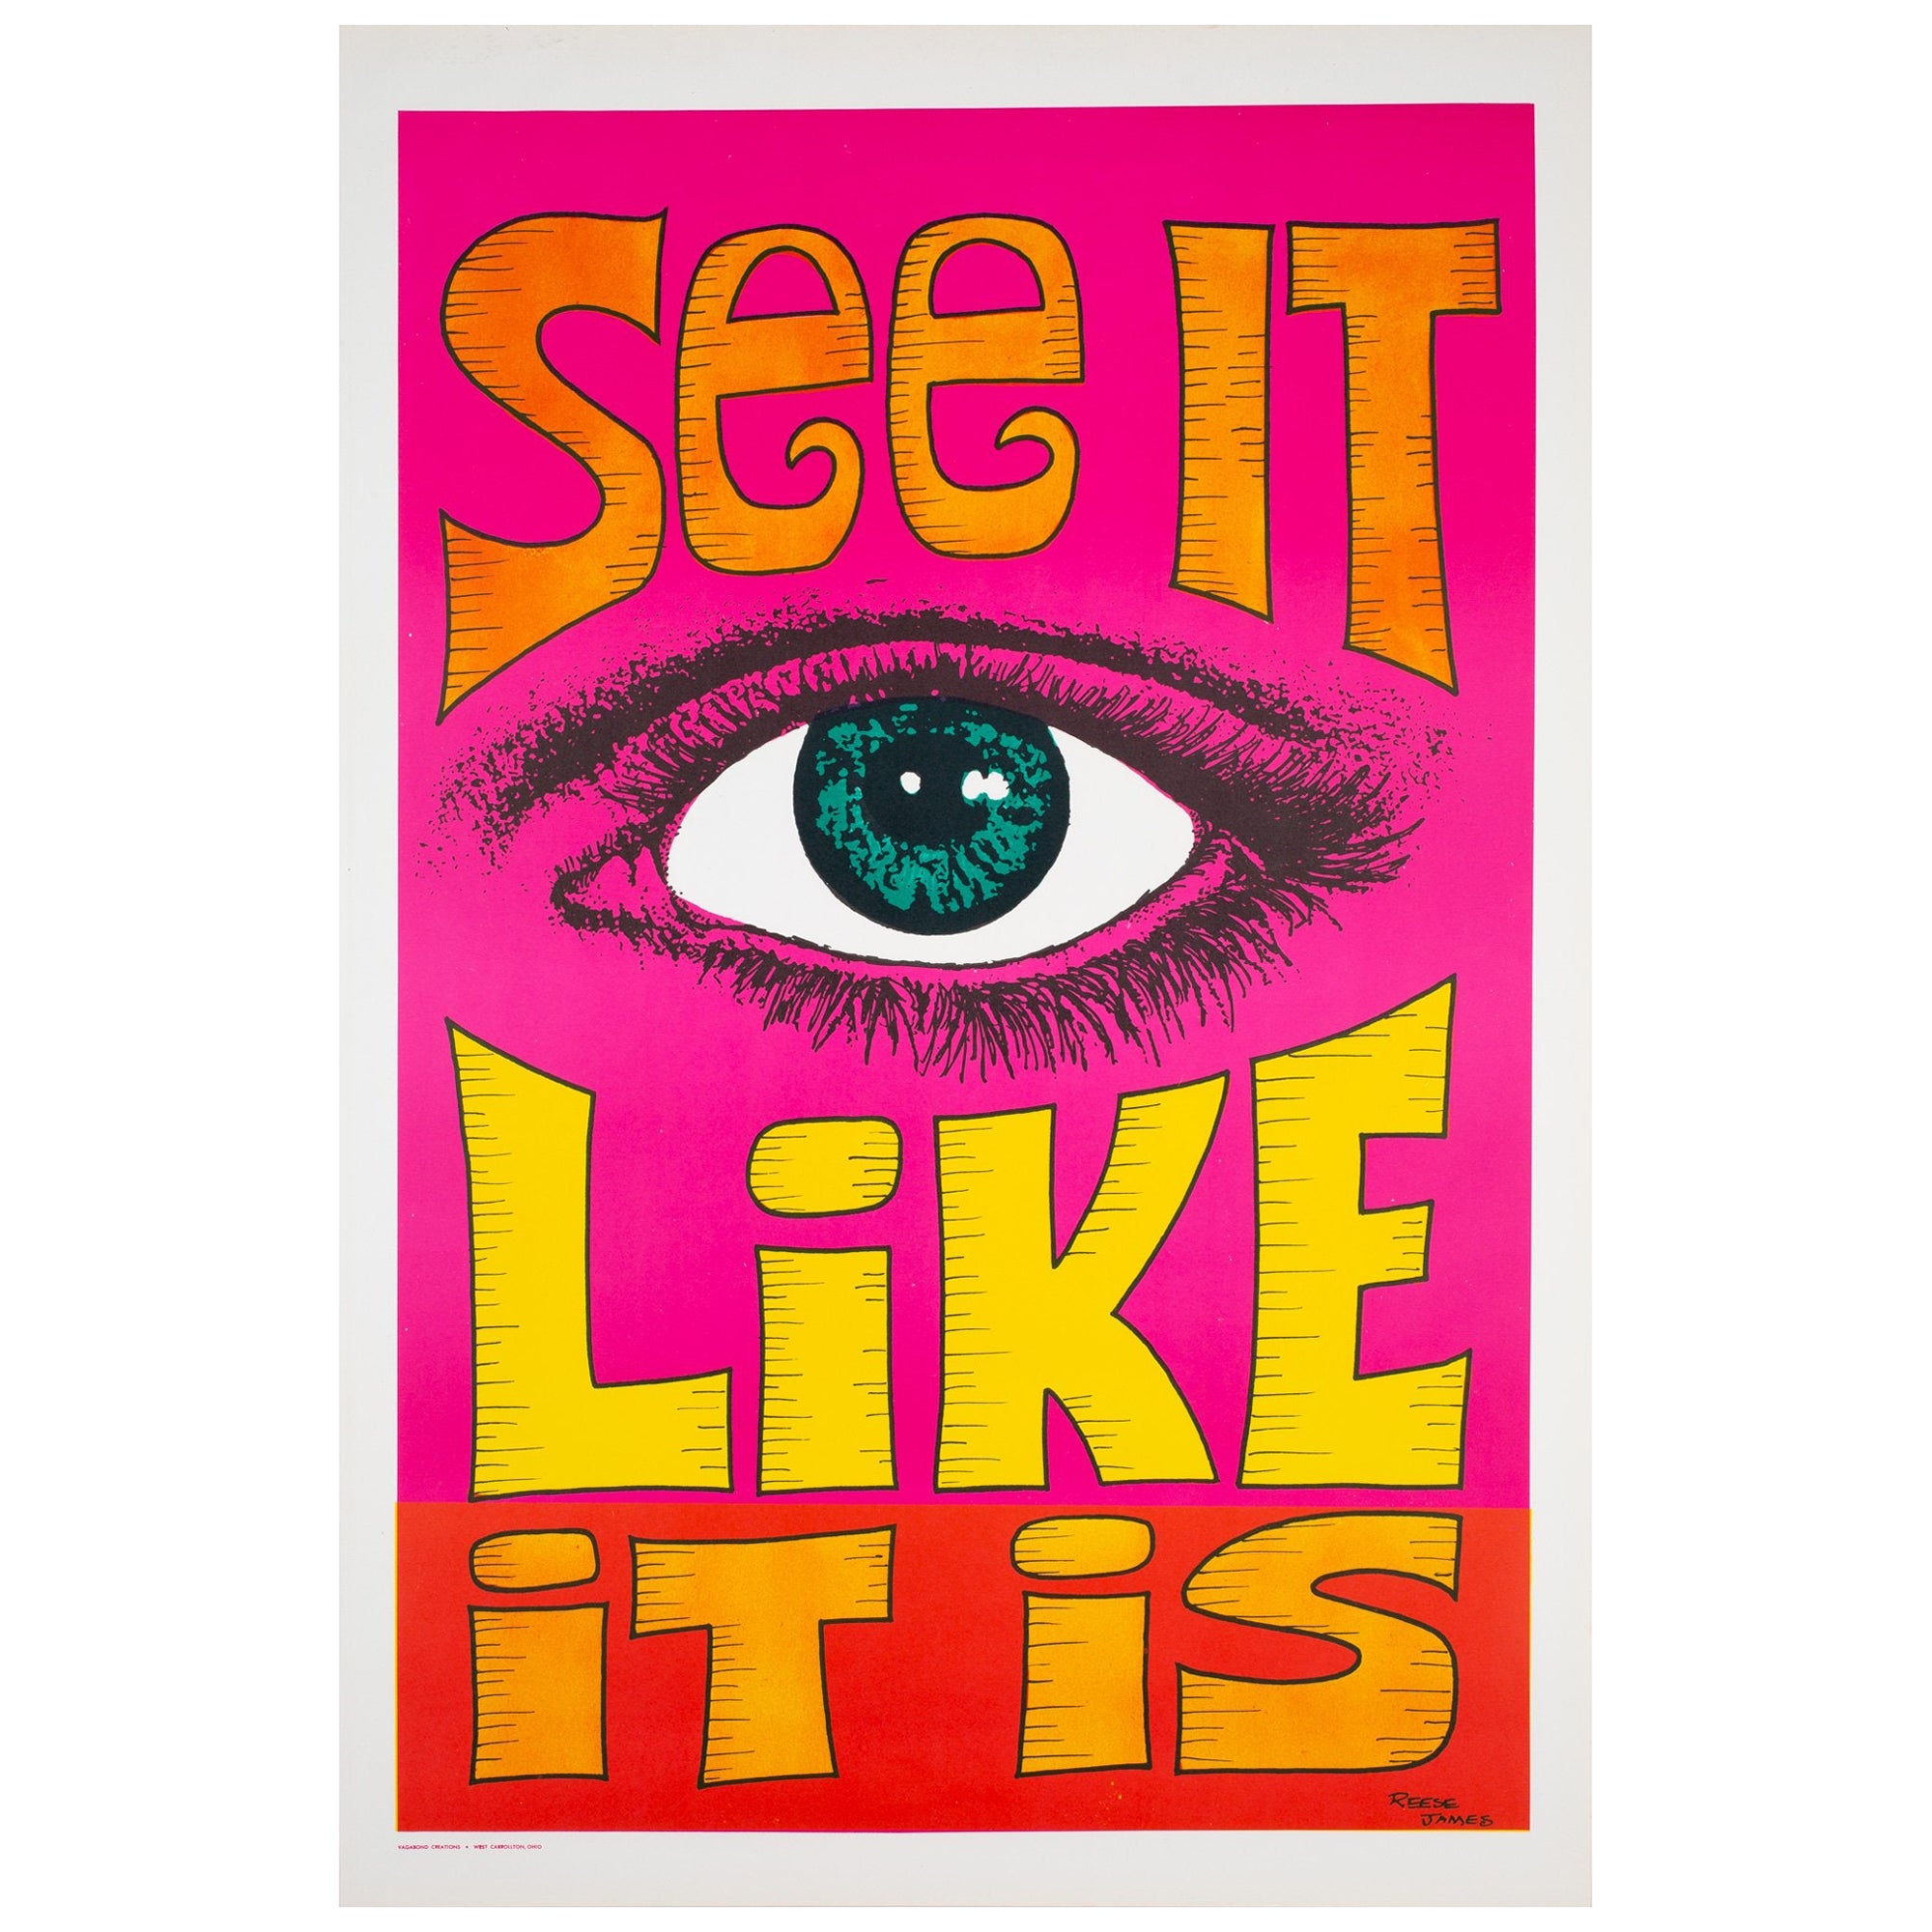 Affiche politique/contestataire américaine des années 1970 « See It like It Is », Reese James